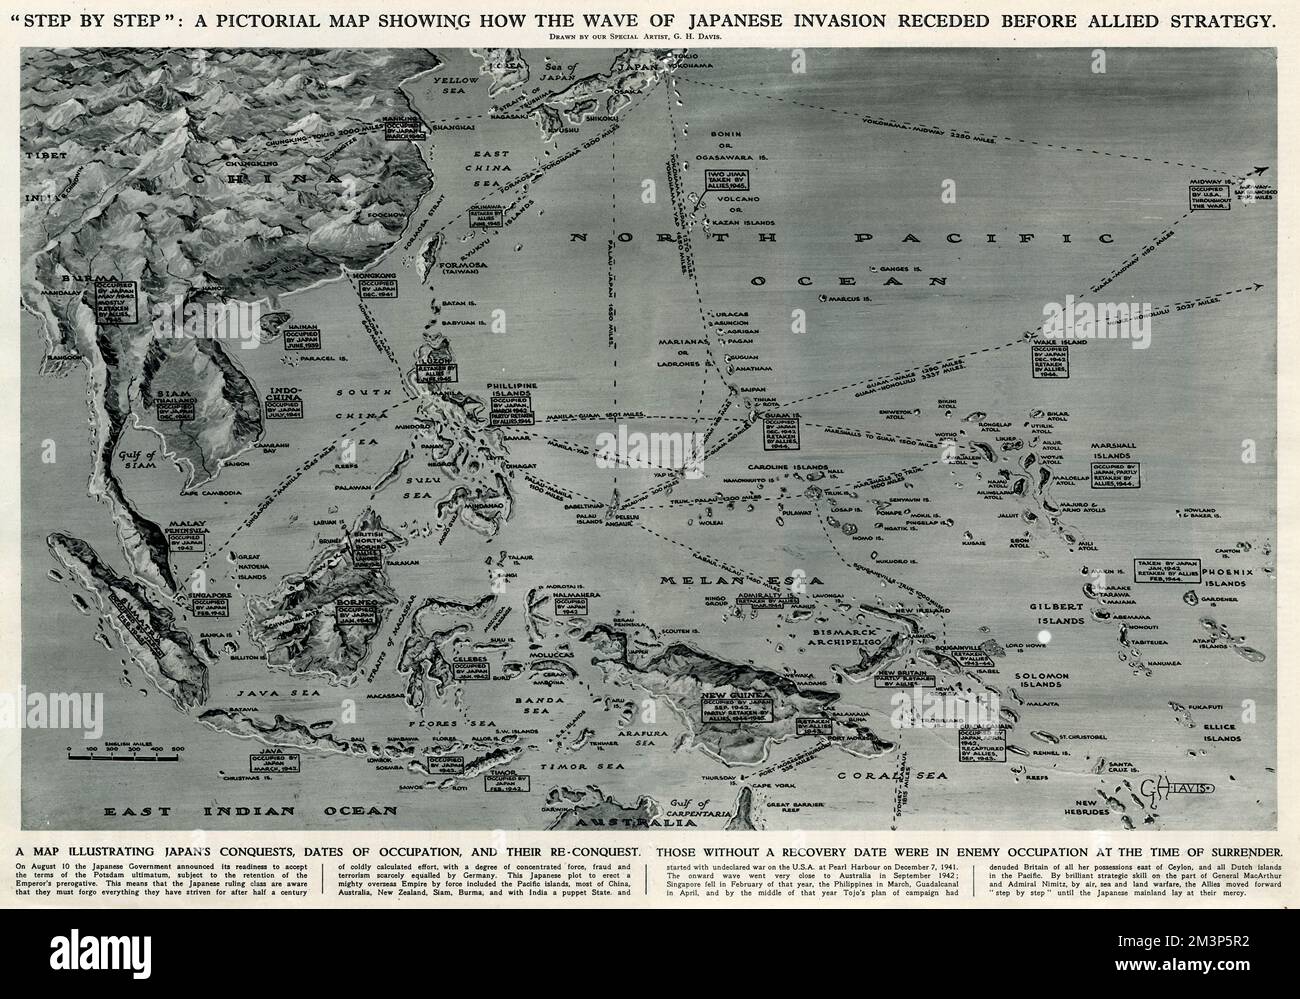 Une carte graphique de la région du Pacifique, montrant comment la vague d'invasion japonaise a reculé à la suite de la stratégie alliée pendant la Seconde Guerre mondiale. Montrant les conquêtes, les dates d'occupation et les conquêtes du Japon. Date: 1945 Banque D'Images